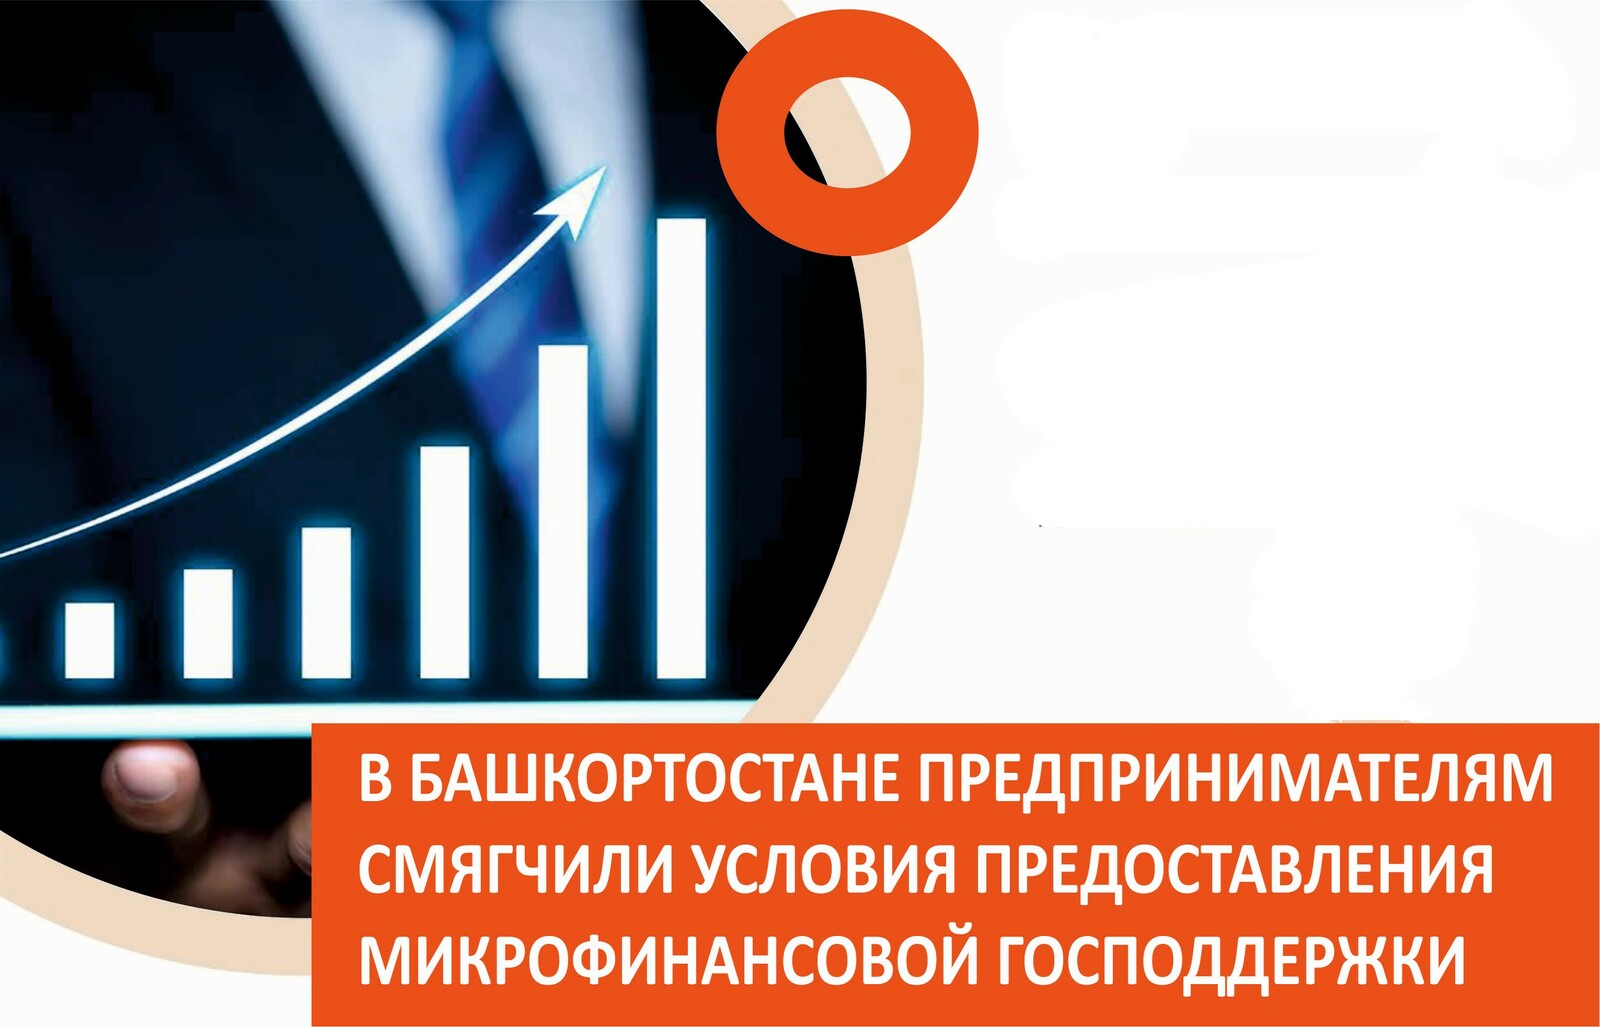 Благодаря поддержке нацпроекта в Башкирии увеличилось число субъектов МСП